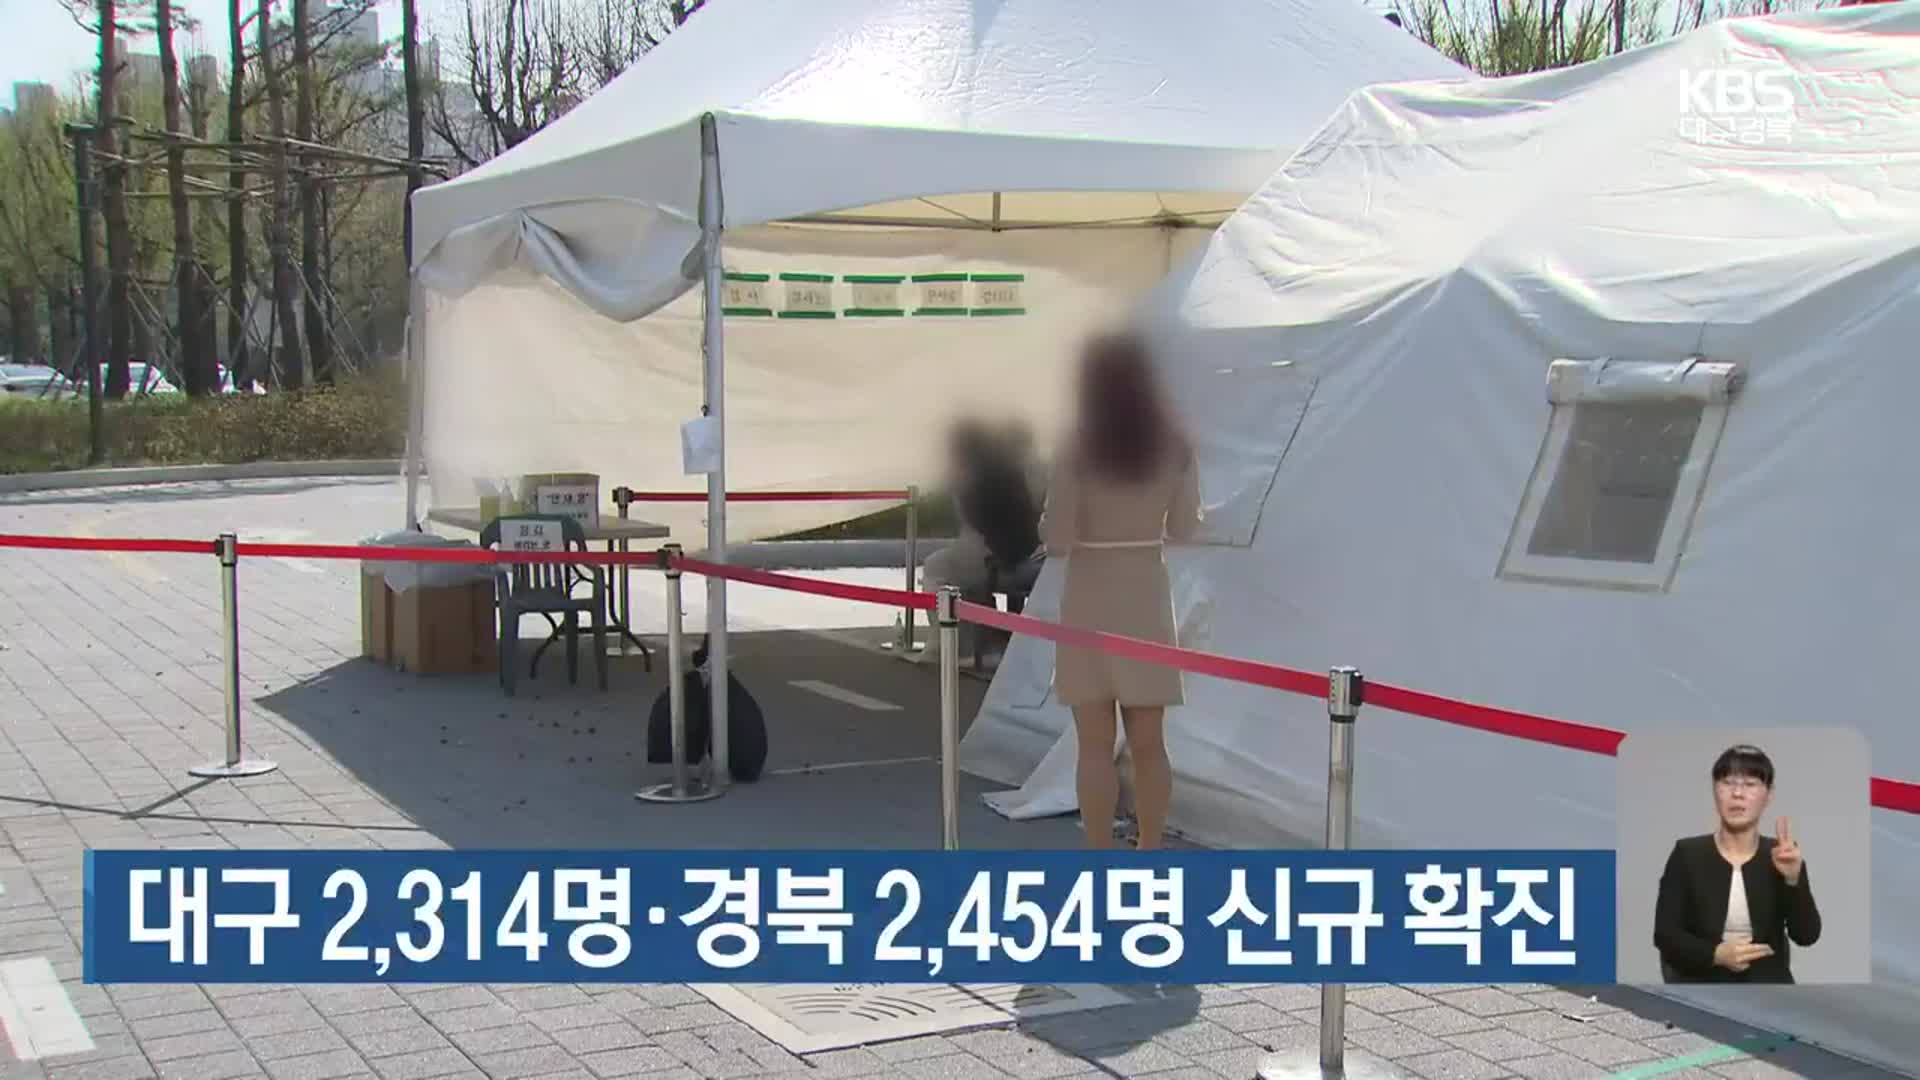 대구 2,314명·경북 2,454명 신규 확진